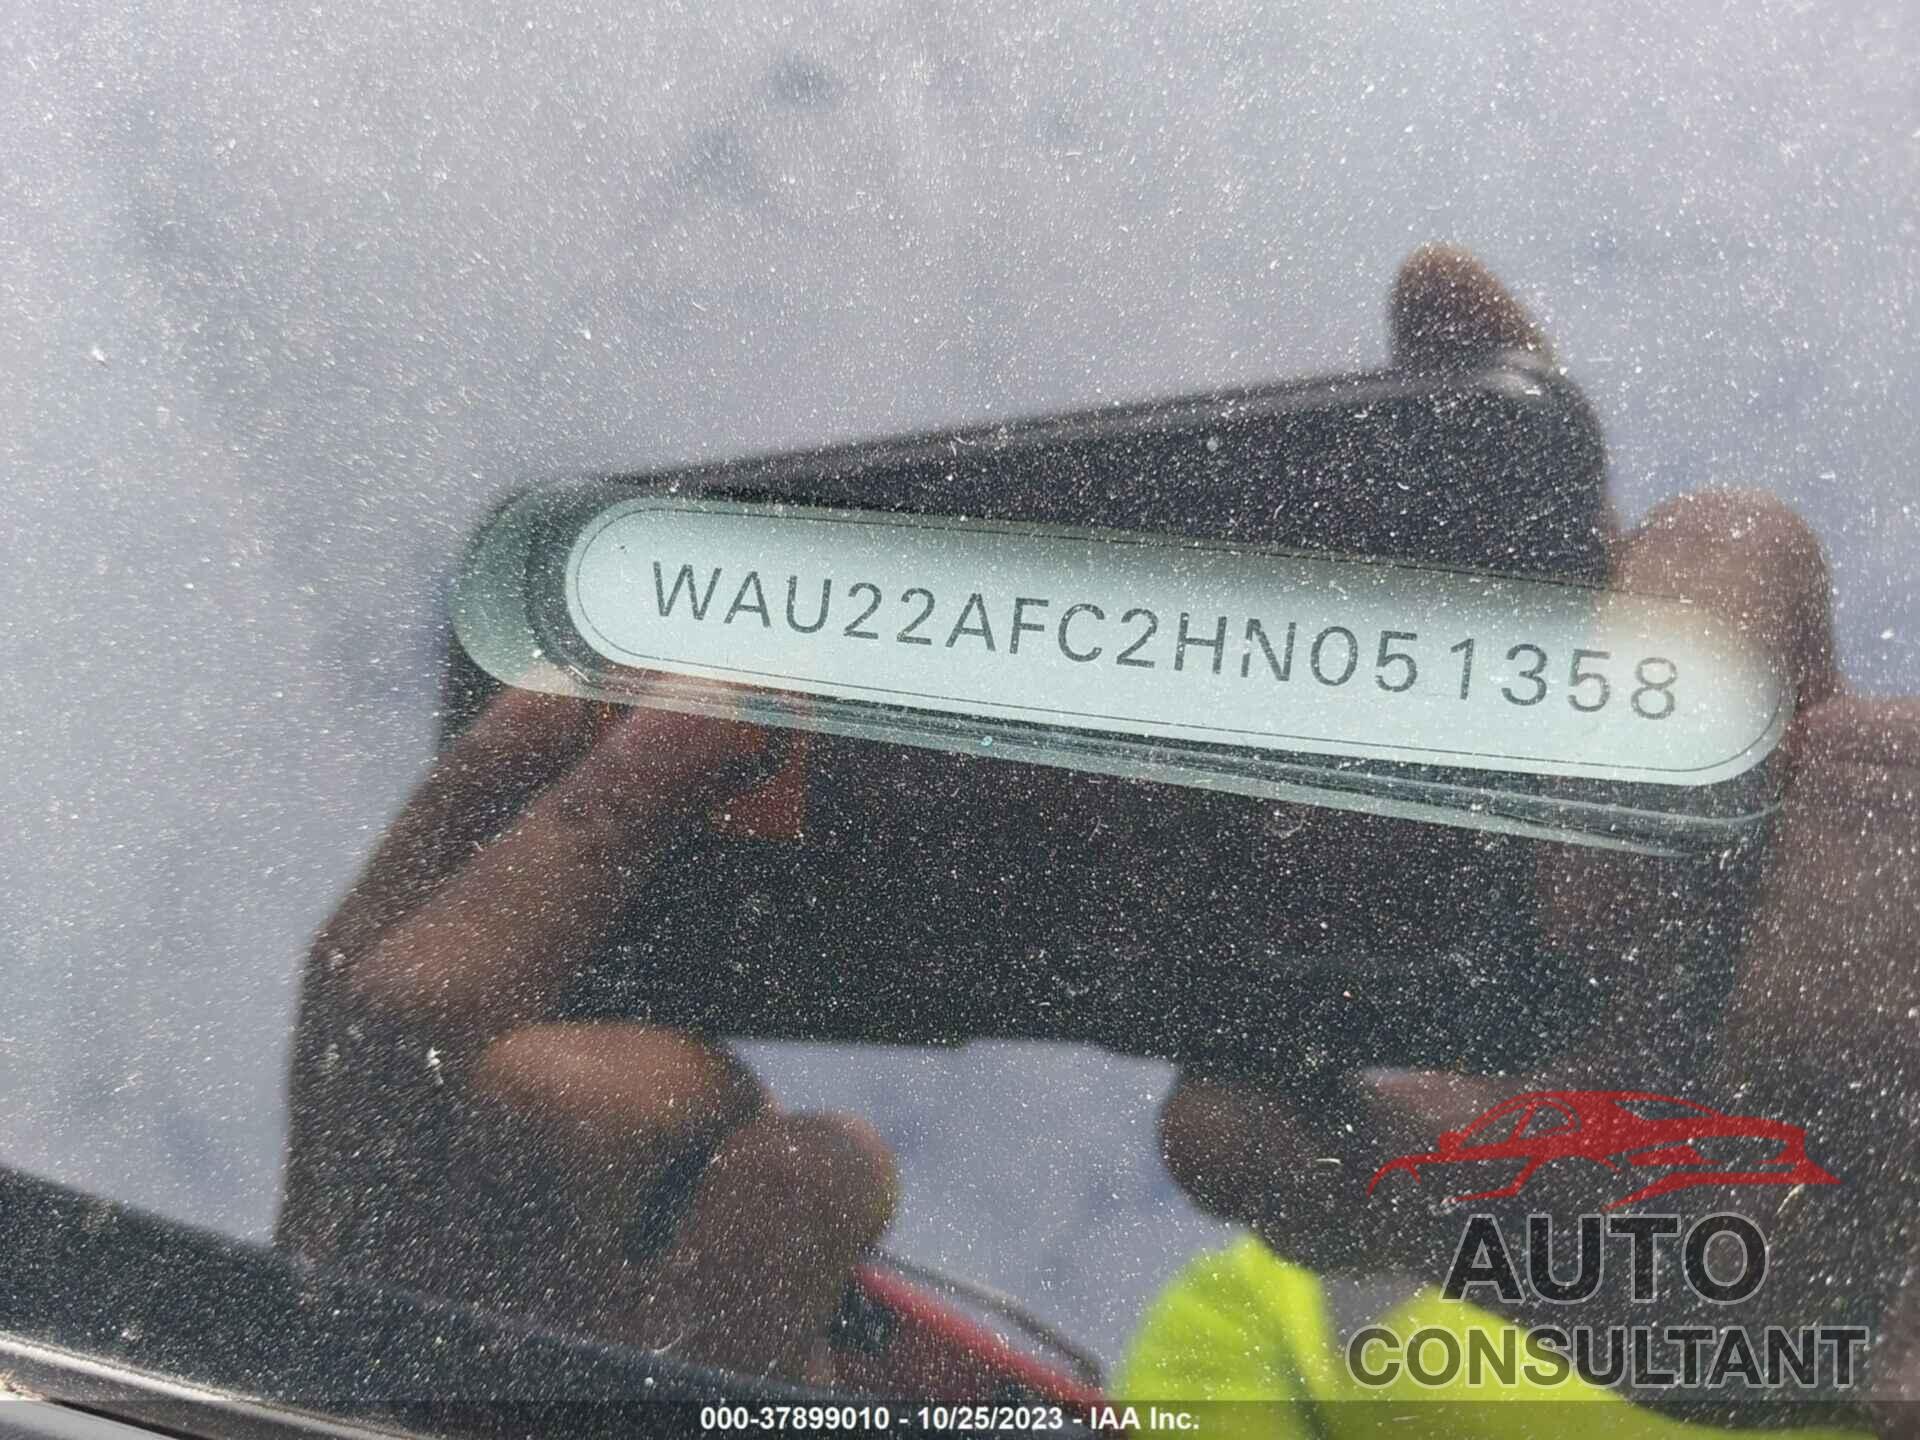 AUDI A7 2017 - WAU22AFC2HN051358